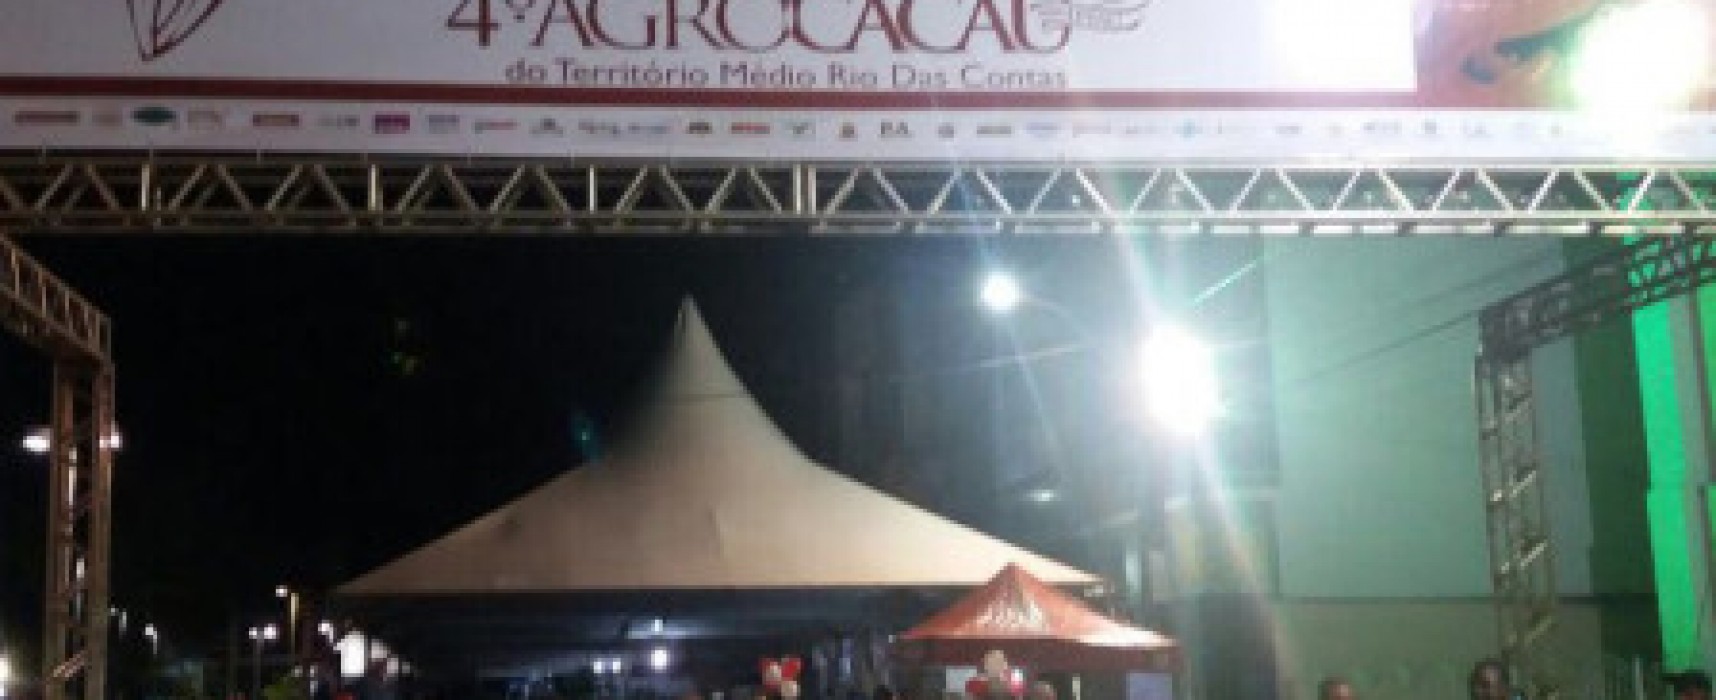 Chocolates produzidos por pequenos agricultores são expostos em festival na cidade de Ipiaú